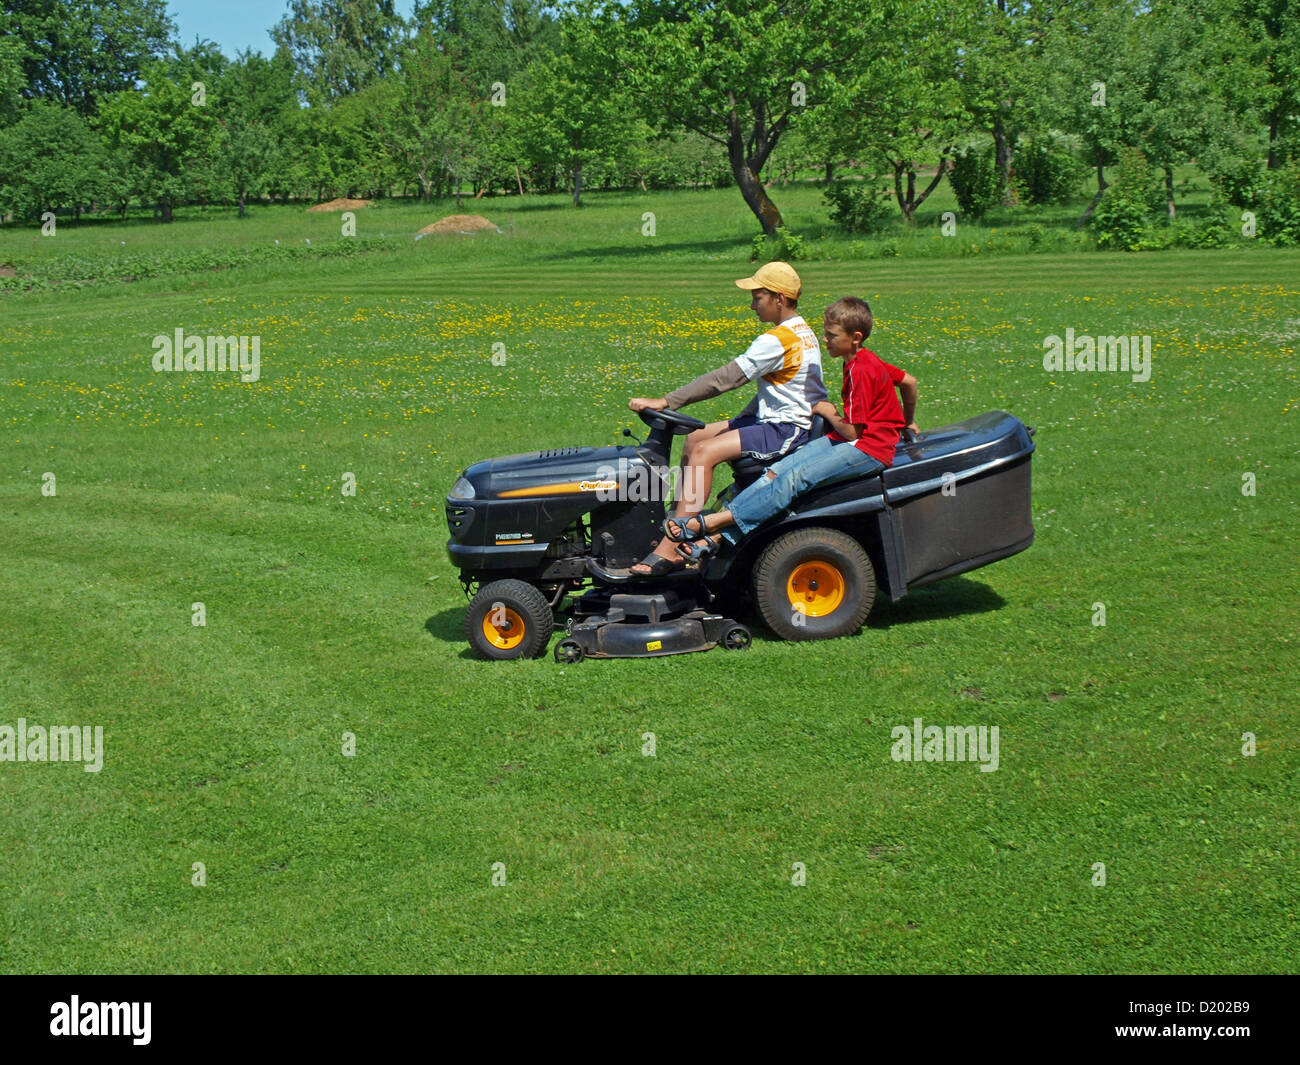 Zwei Land jungen Rasen zu mähen, mit kleinen Garten Traktor auf Feld  Stockfotografie - Alamy